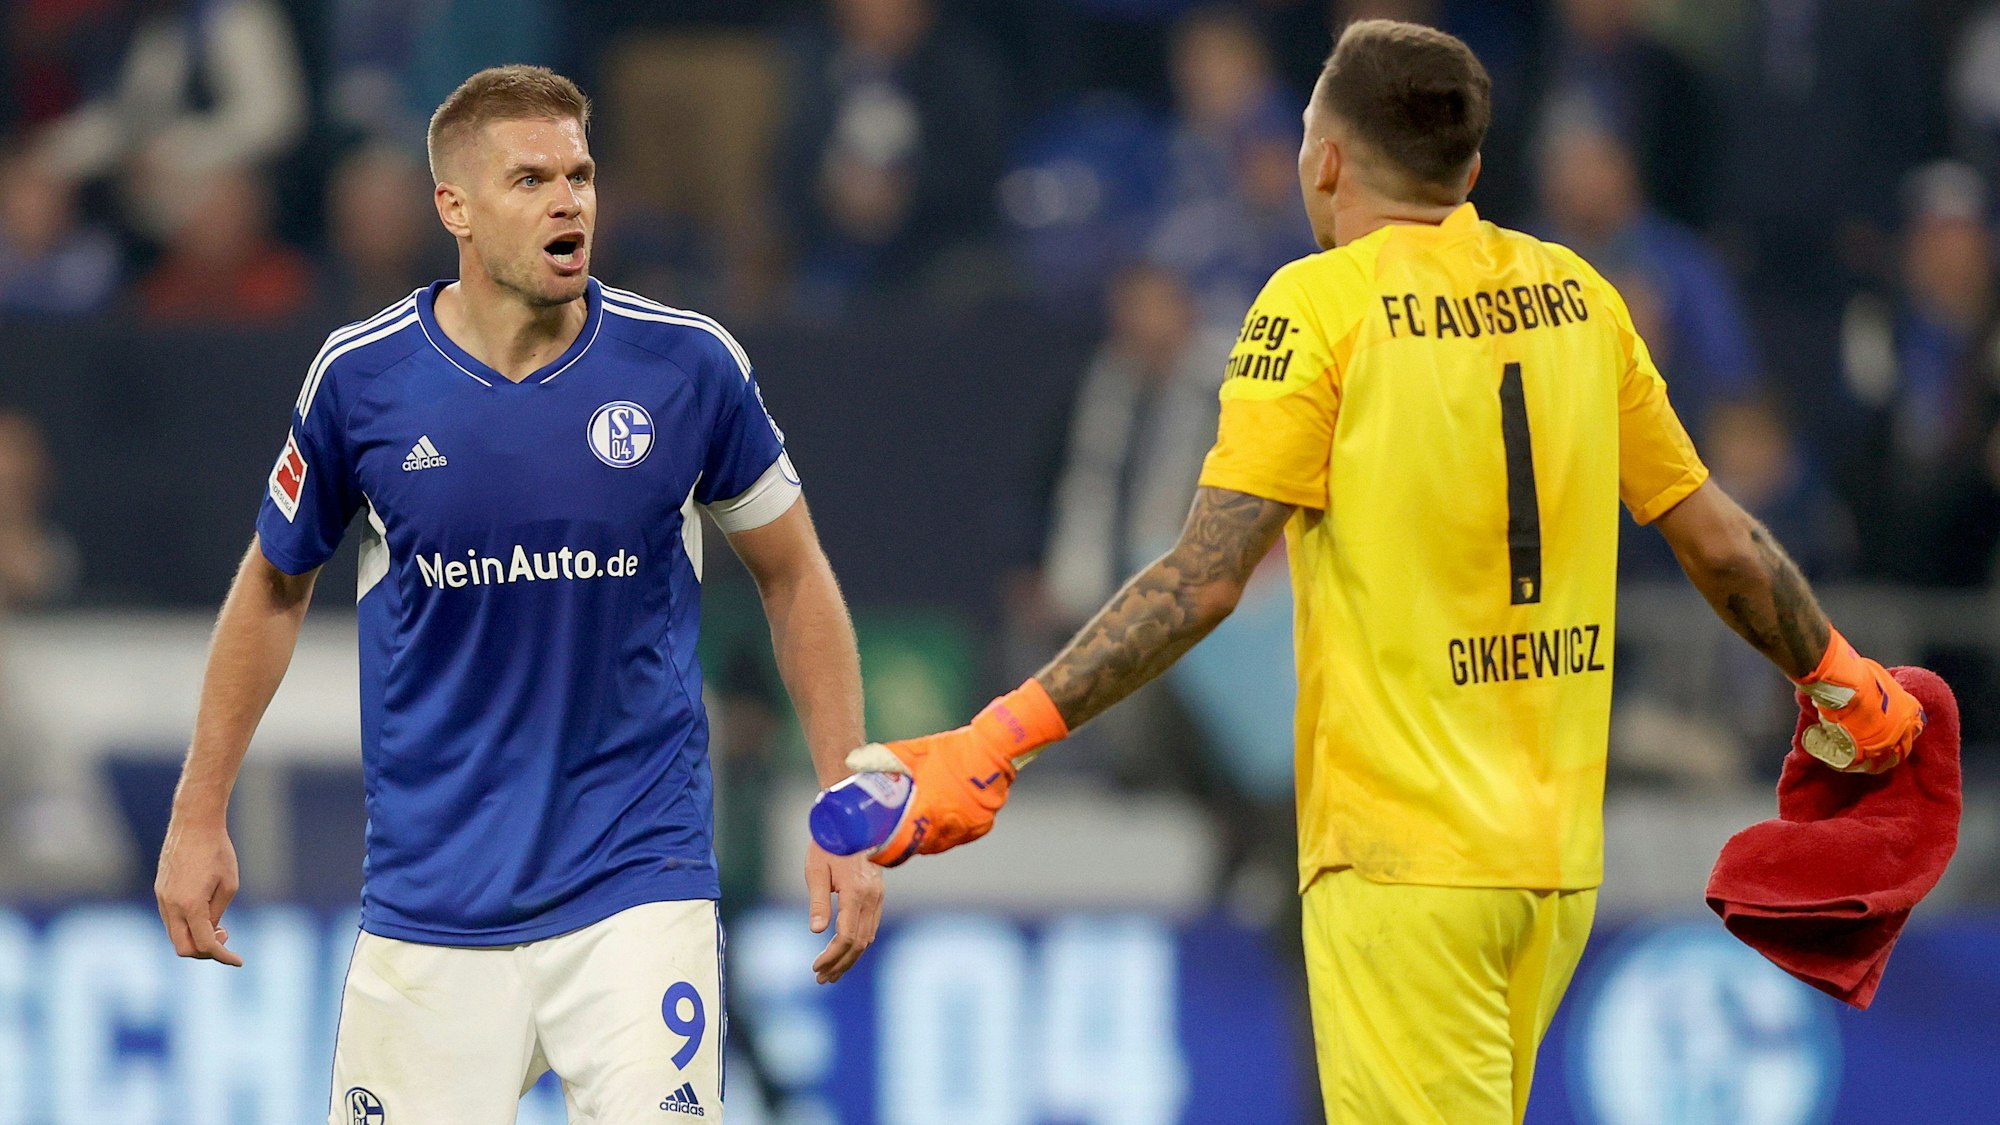 Schalke-Stürmer Simon Terodde und Augsburg-Schlussmann Rafal Gikiewicz nach Abpfiff im Streit.